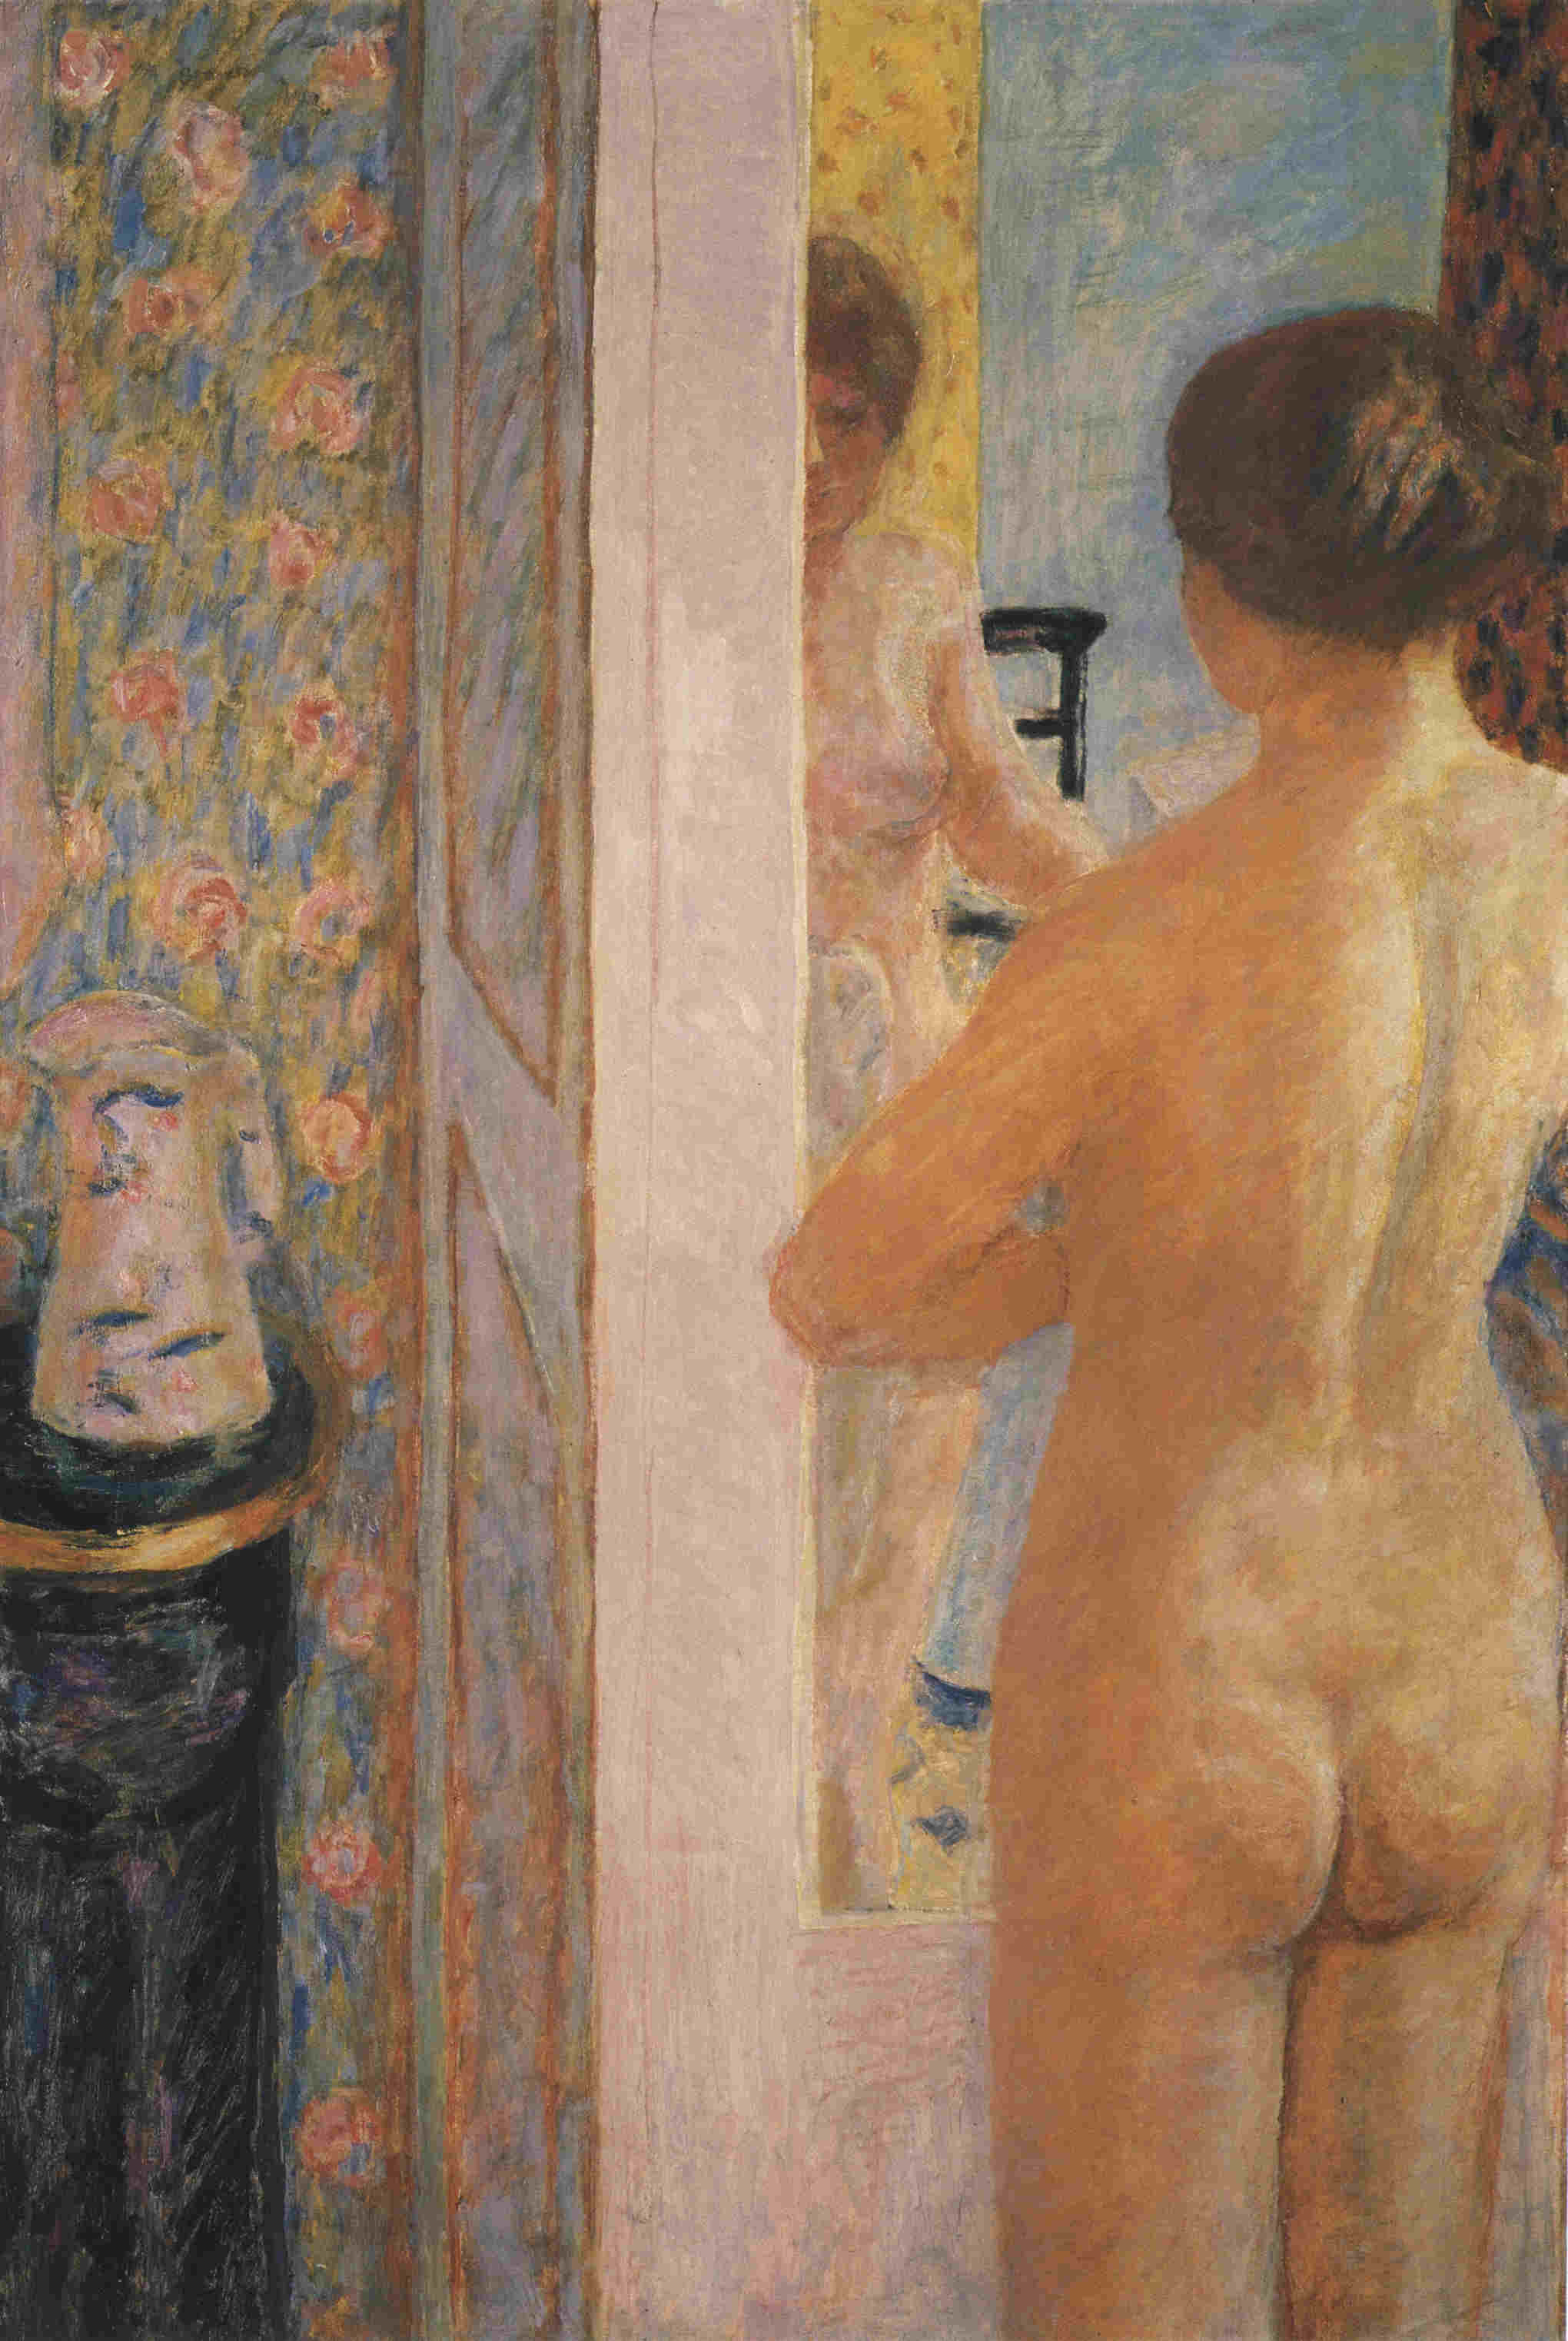 The Toilet by Pierre Bonnard - 1908 - 119 x 79 cm Musée d'Orsay